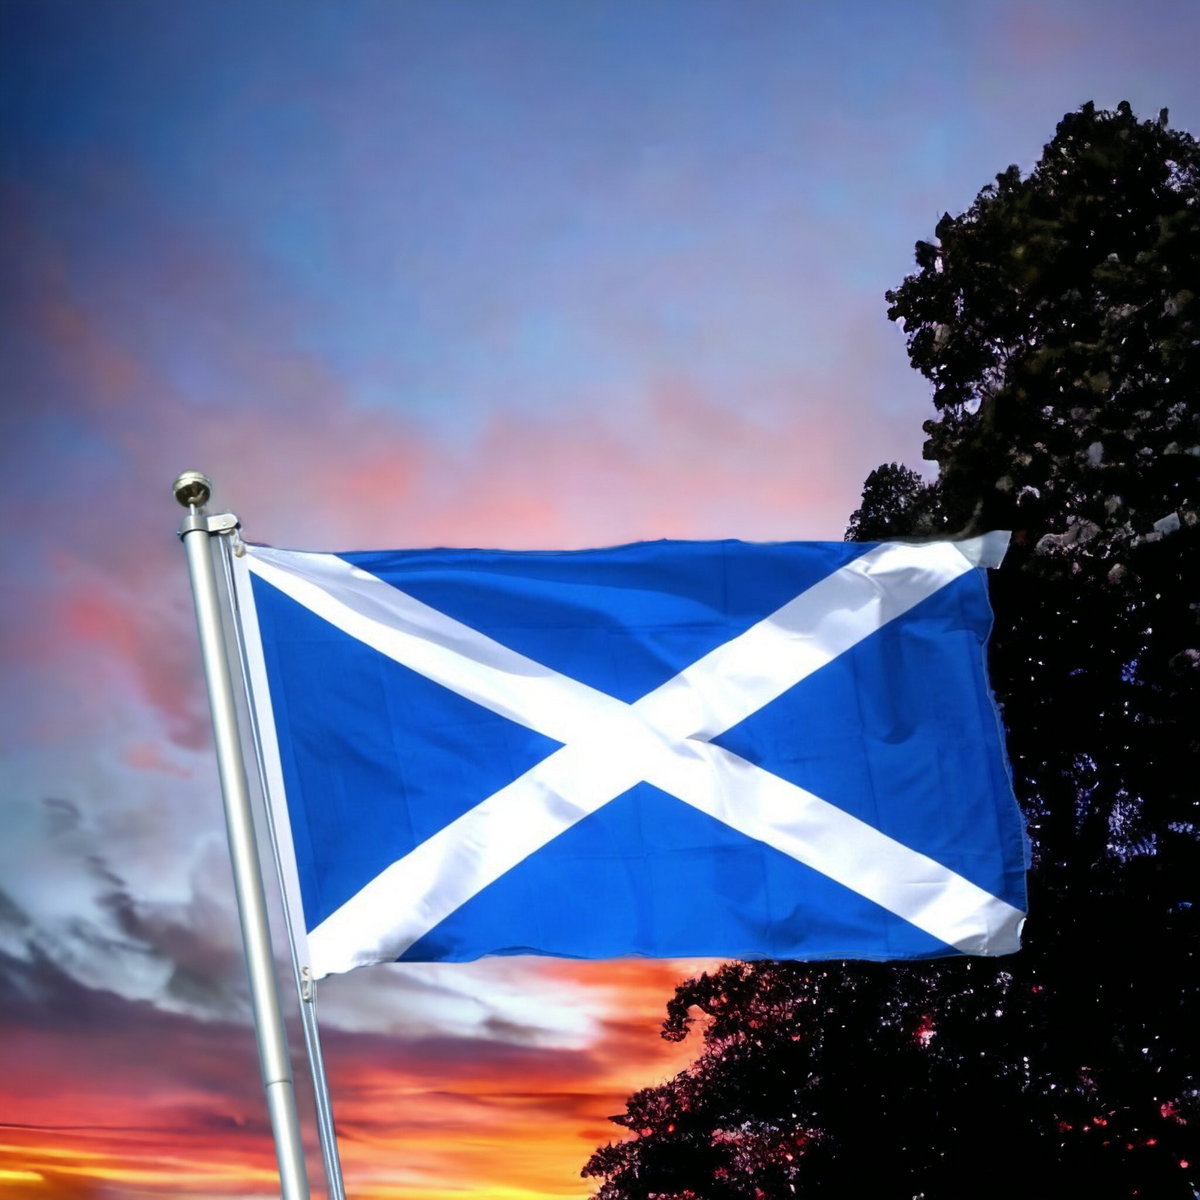 St. Andrews Cross Flag